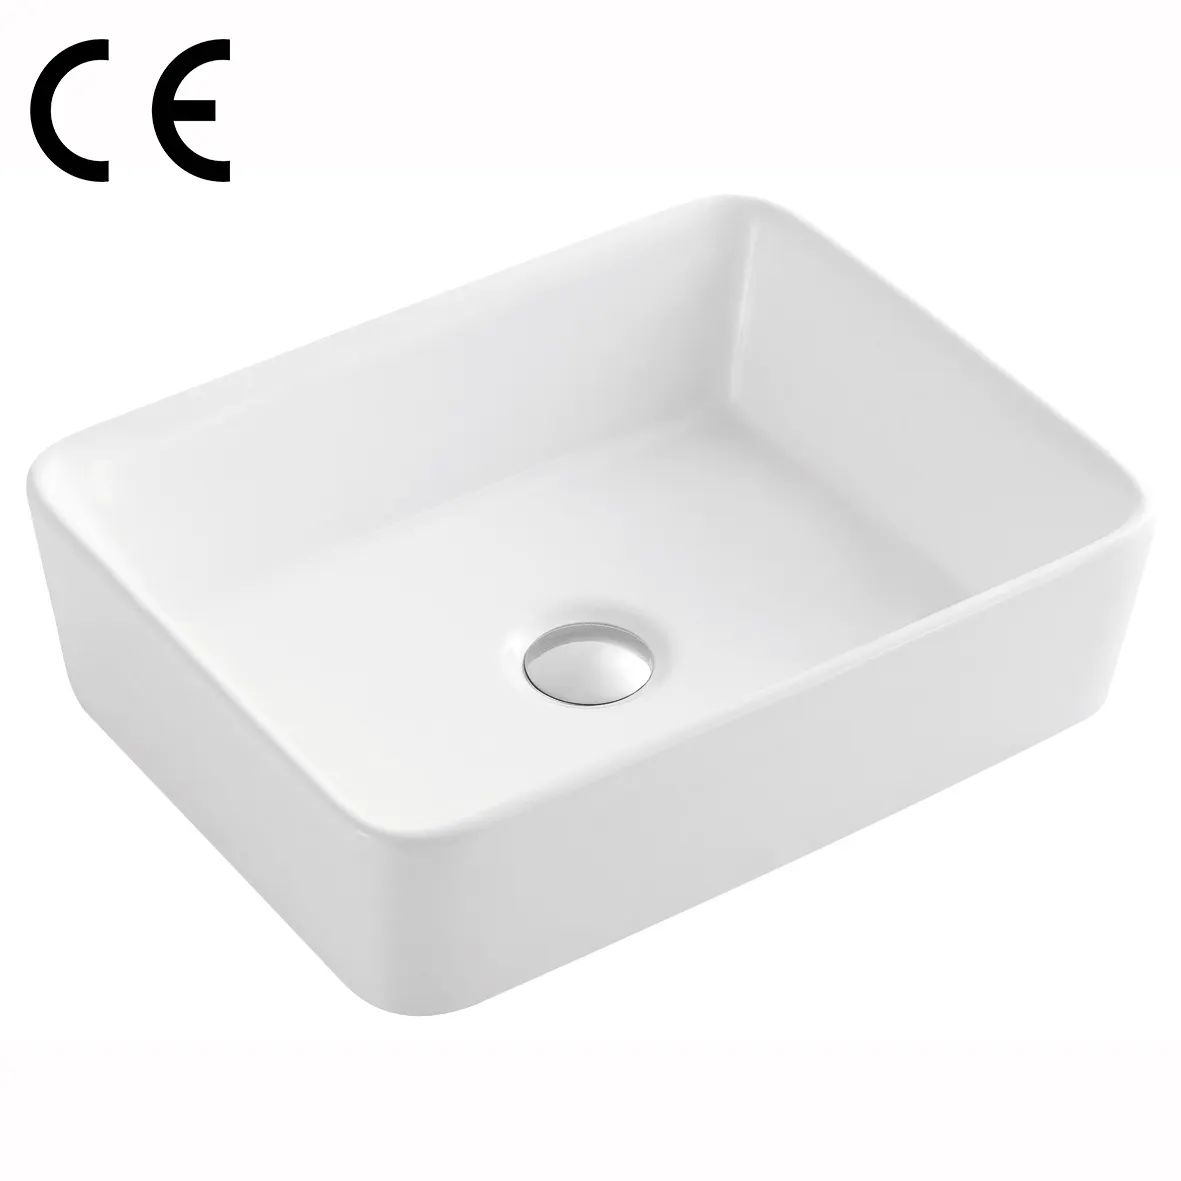 Китайский производитель, умывальник, современный дизайн, глянцевая белая раковина для ванной, Прямоугольная форма, керамический умывальник